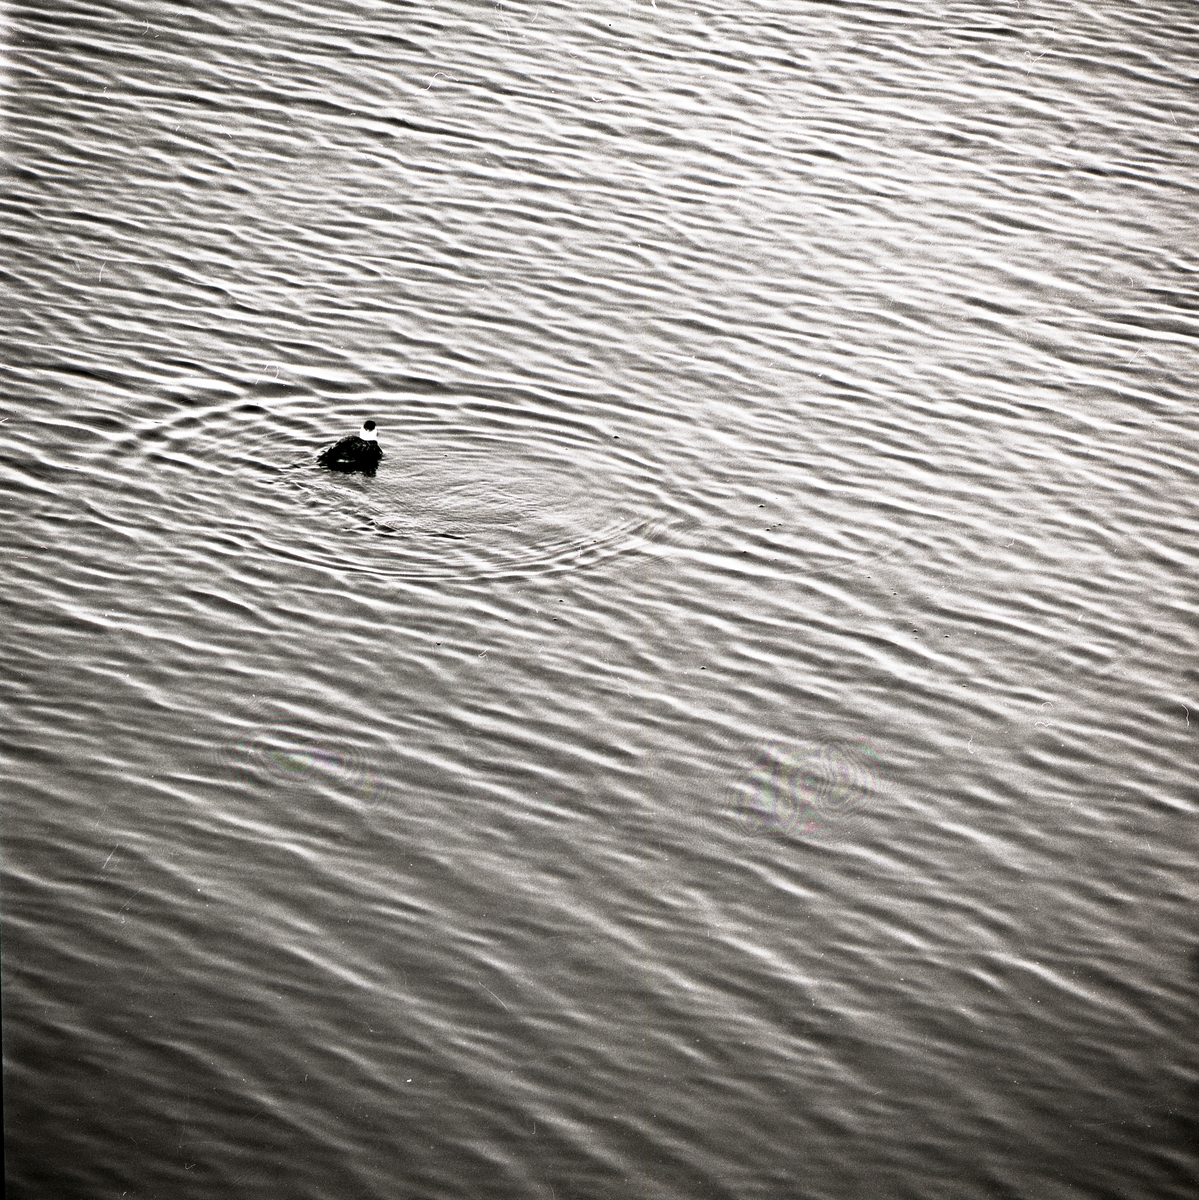 En fågel simmar i vatten med vågigt mönster, 1971.